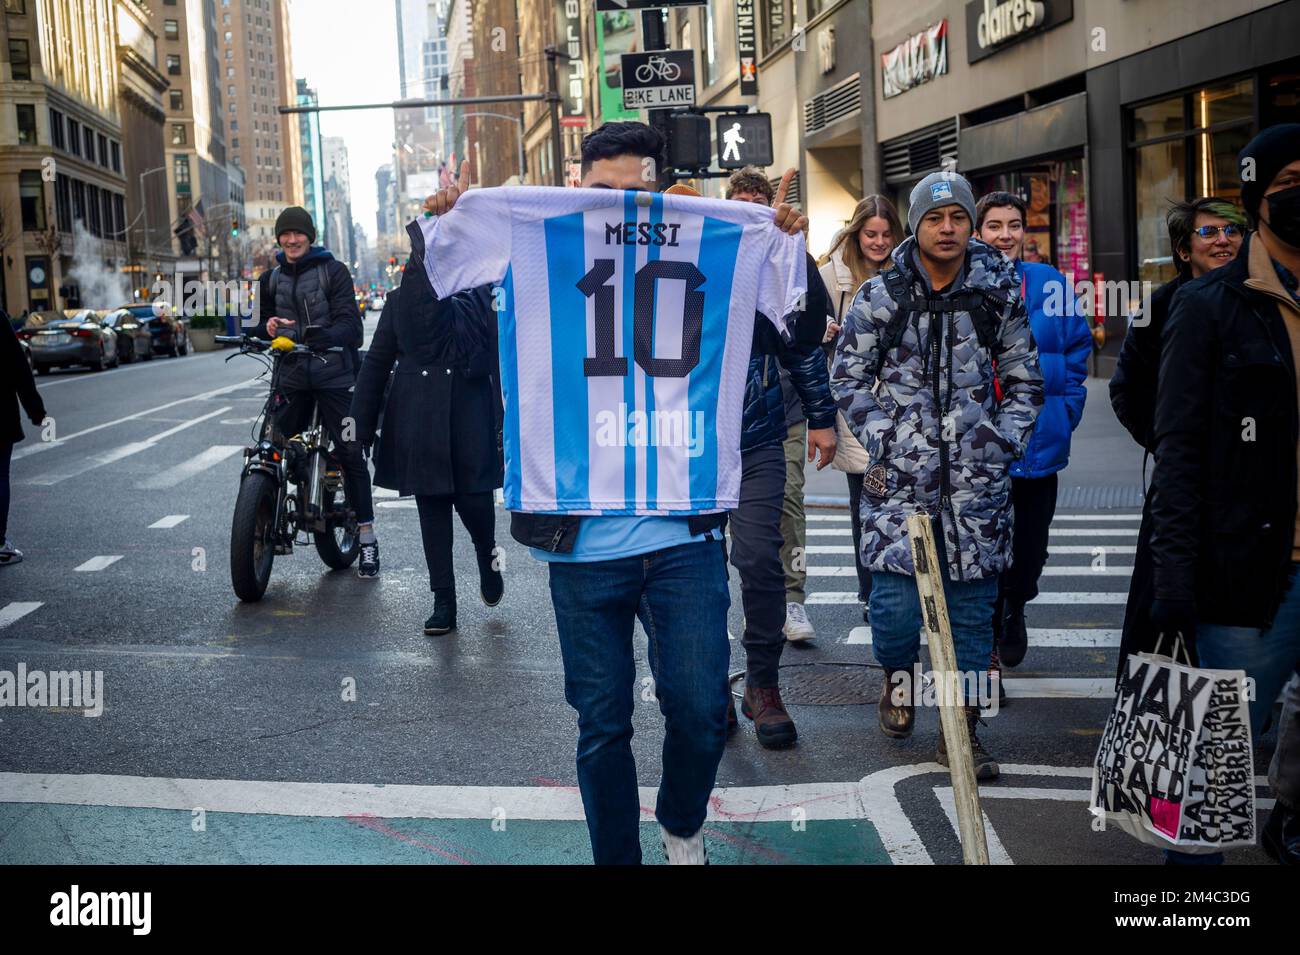 Gli appassionati di calcio argentini e i loro sostenitori festeggiano domenica 18 dicembre 2022 a Midtown Manhattan a New York dopo che l'Argentina sconfigge la Francia in un emozionante gioco per vincere la Coppa del mondo FIFA. (© Richard B. Levine) Foto Stock